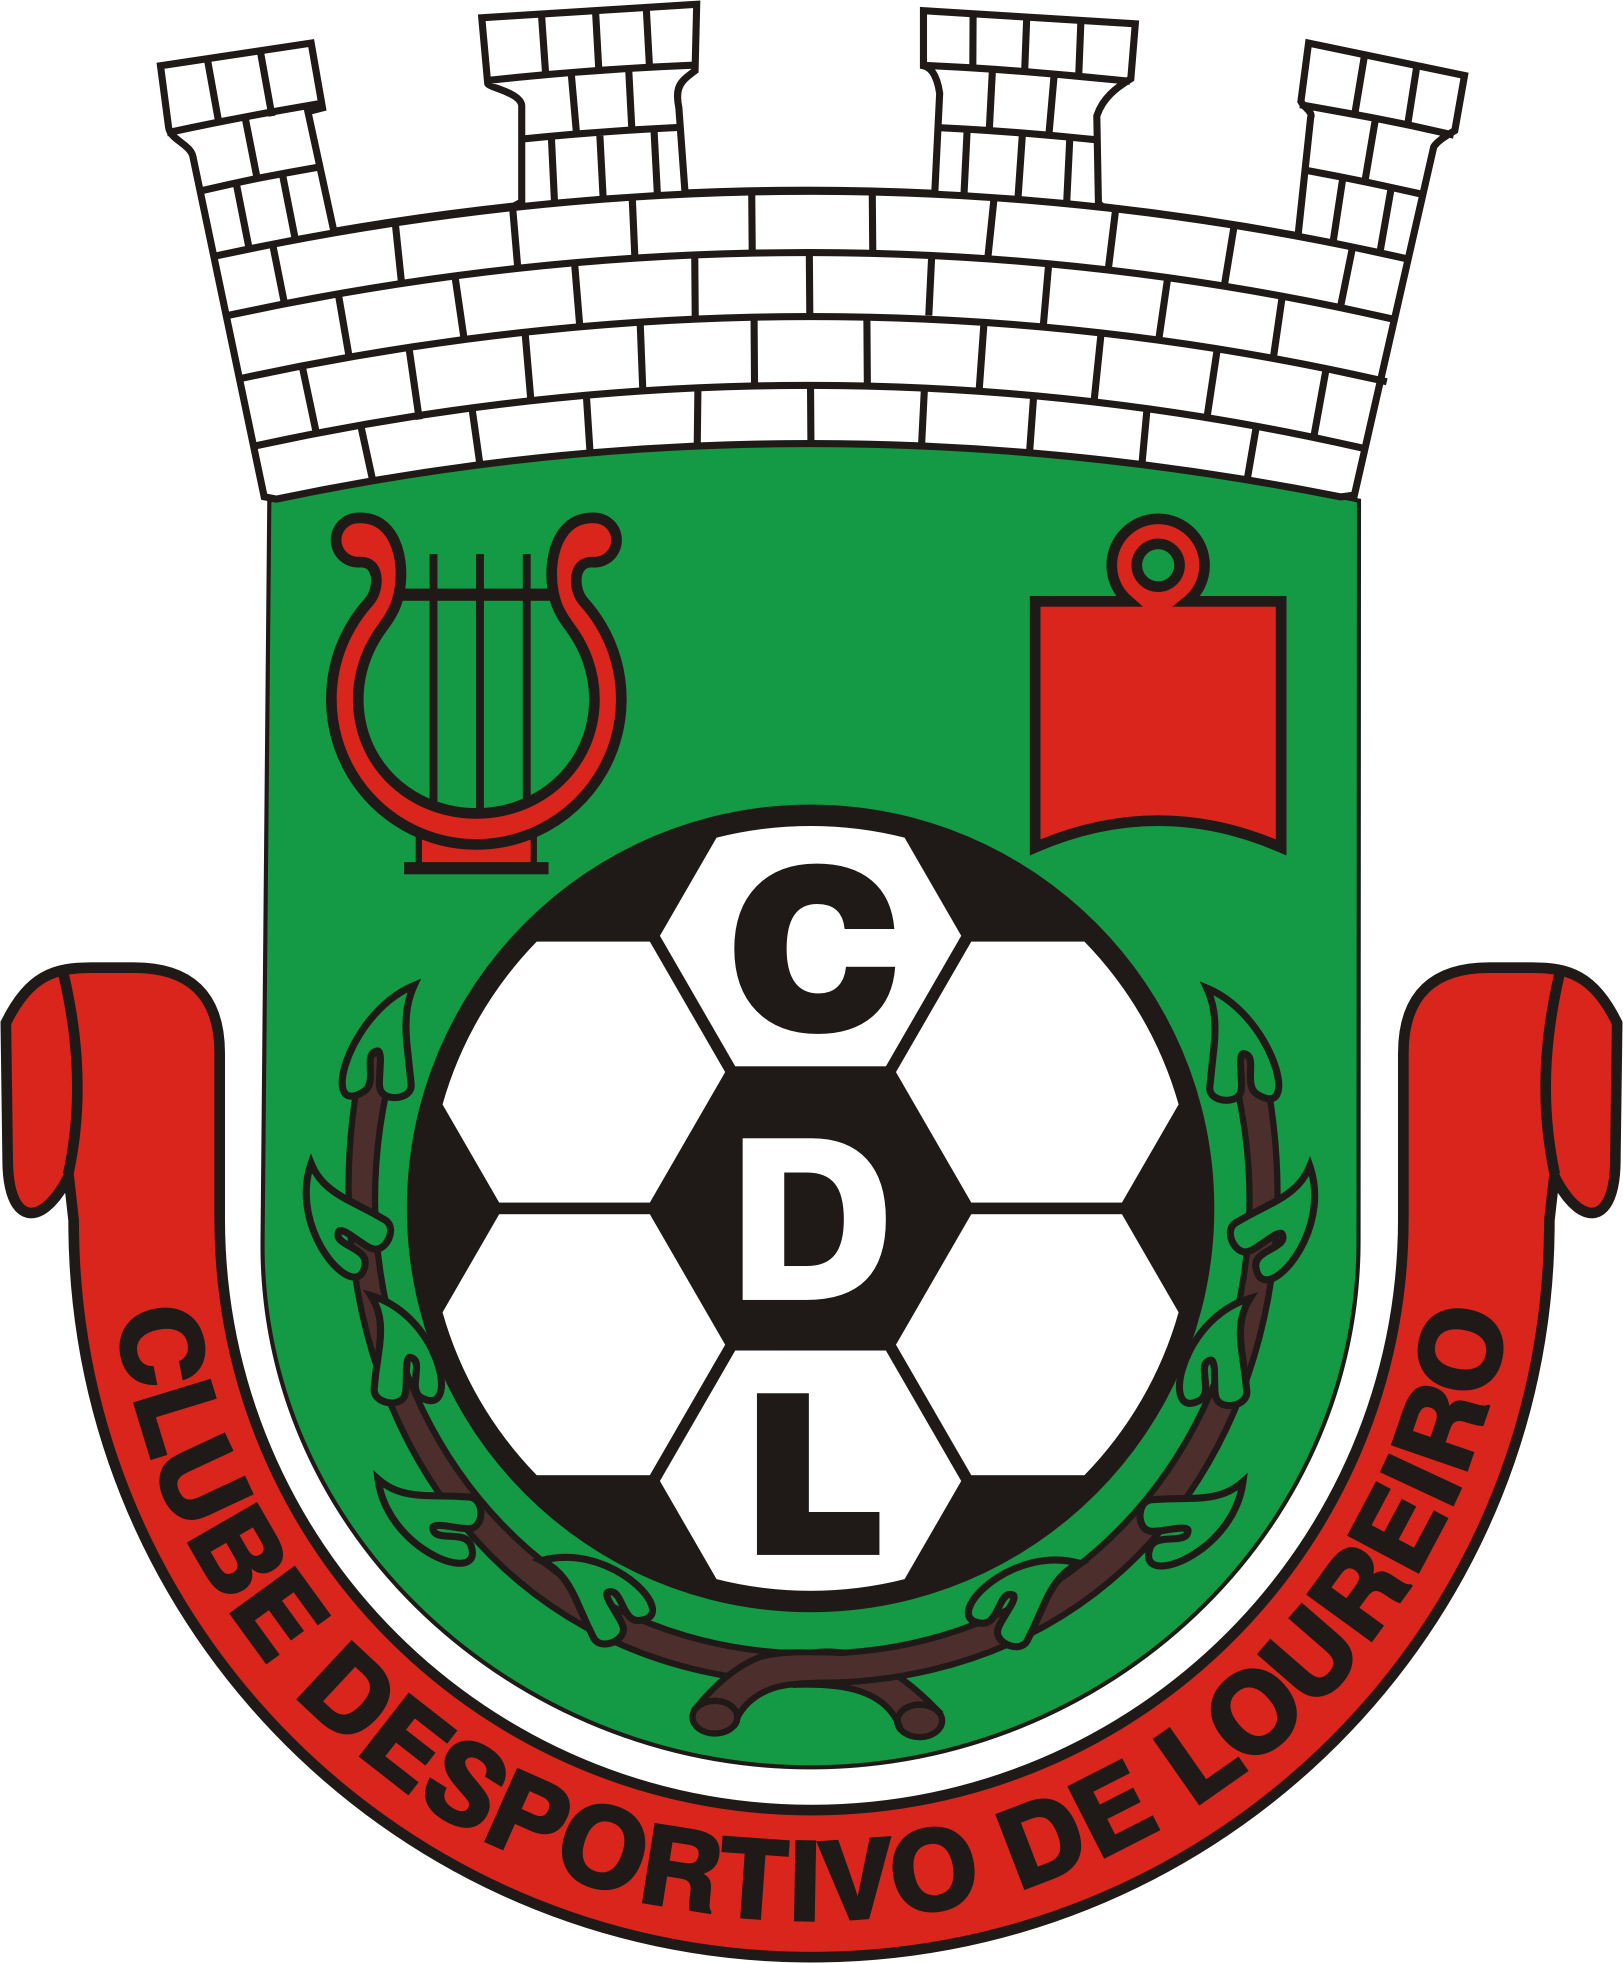 Clube Desportivo de Loureiro